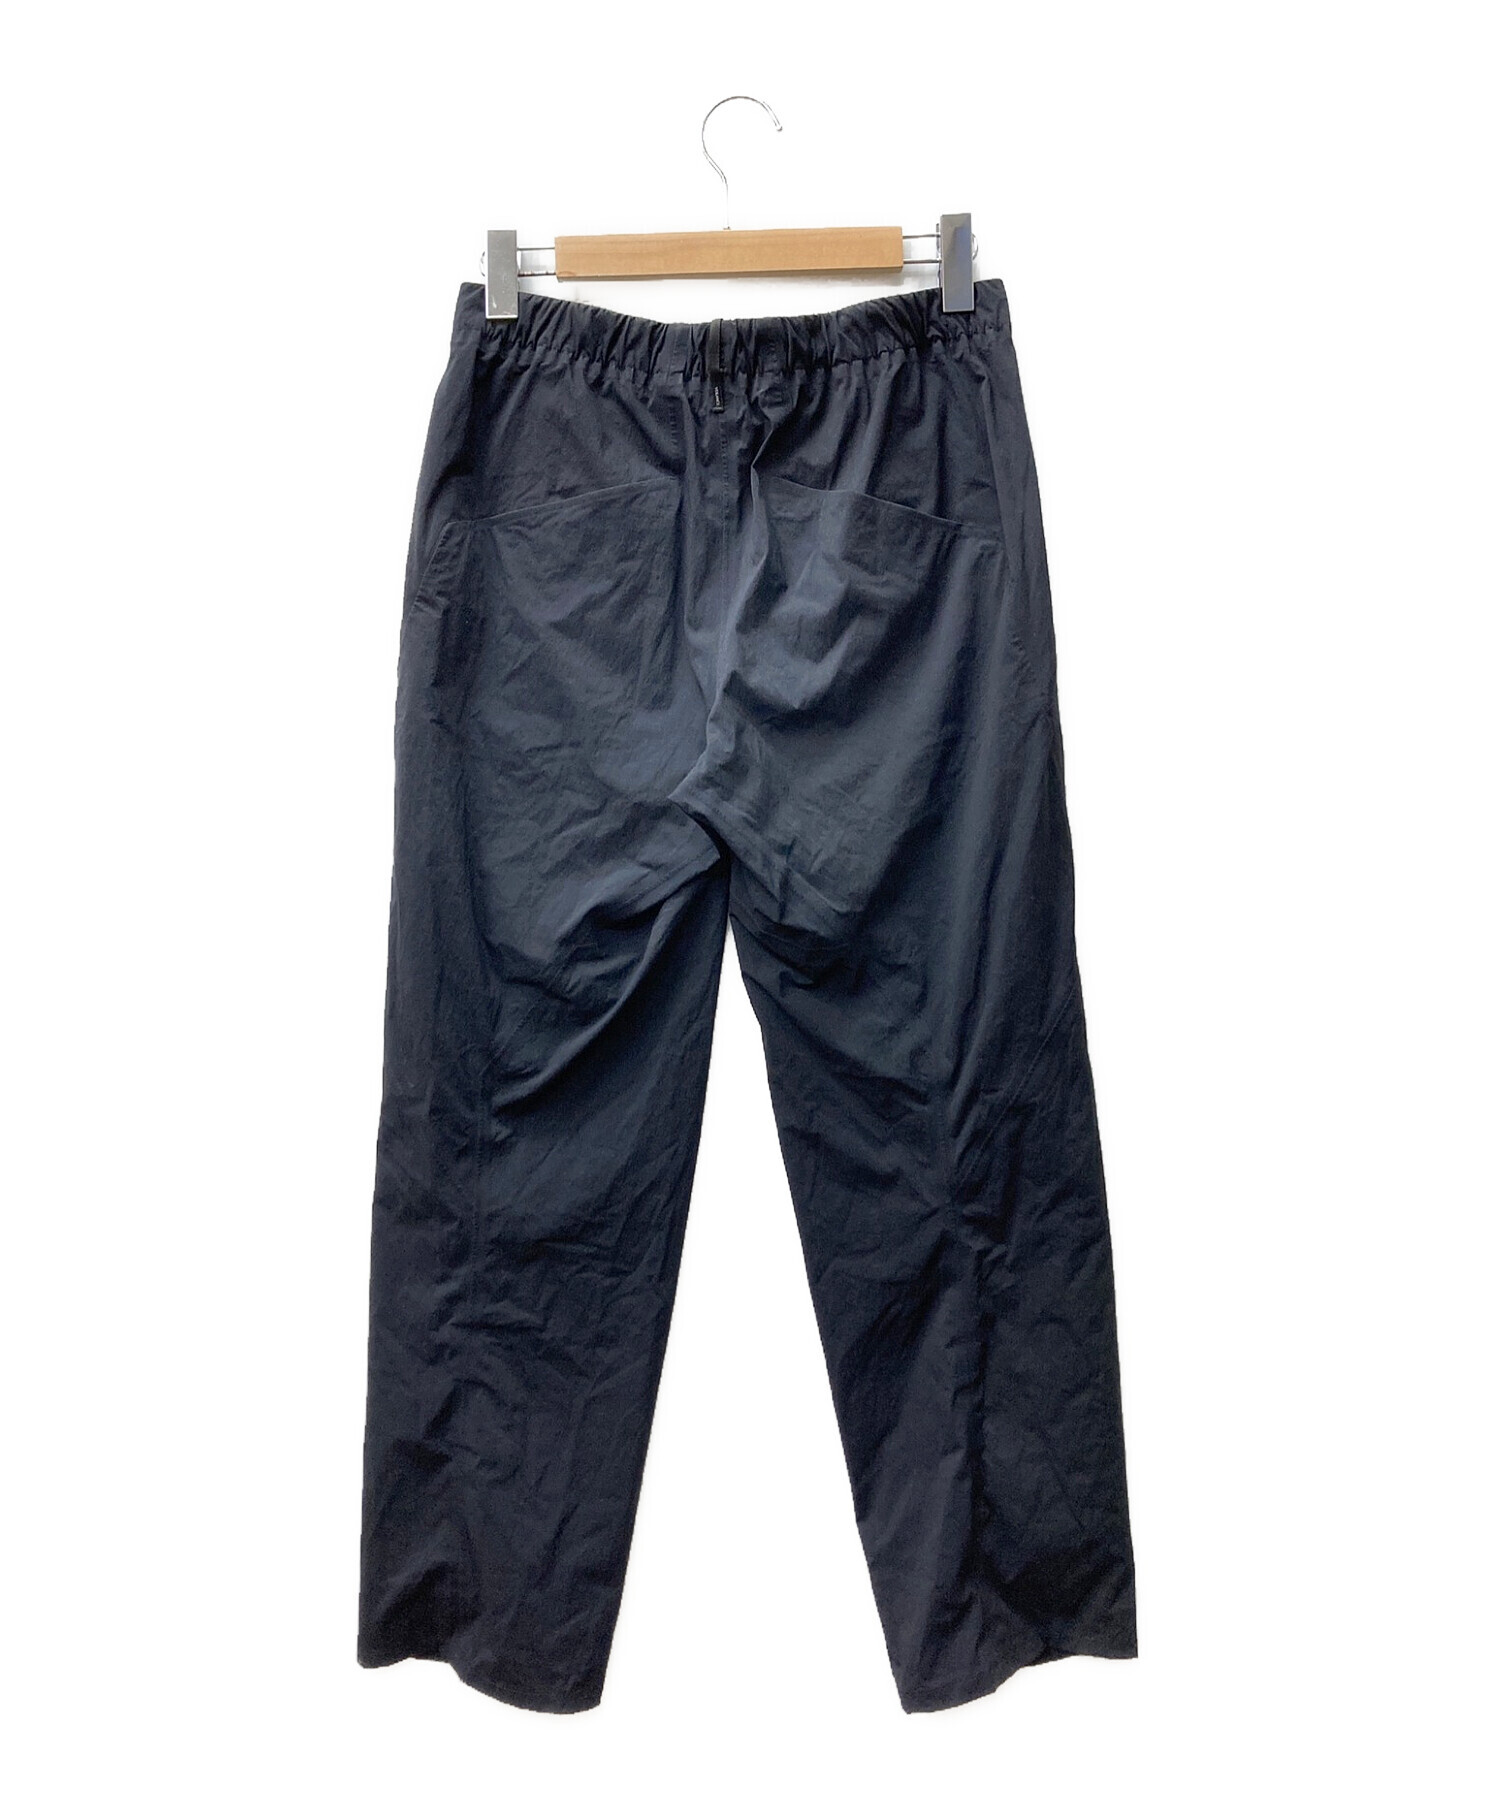 ARC'TERYX VEILANCE Liminal Pant size30 - ワークパンツ/カーゴパンツ